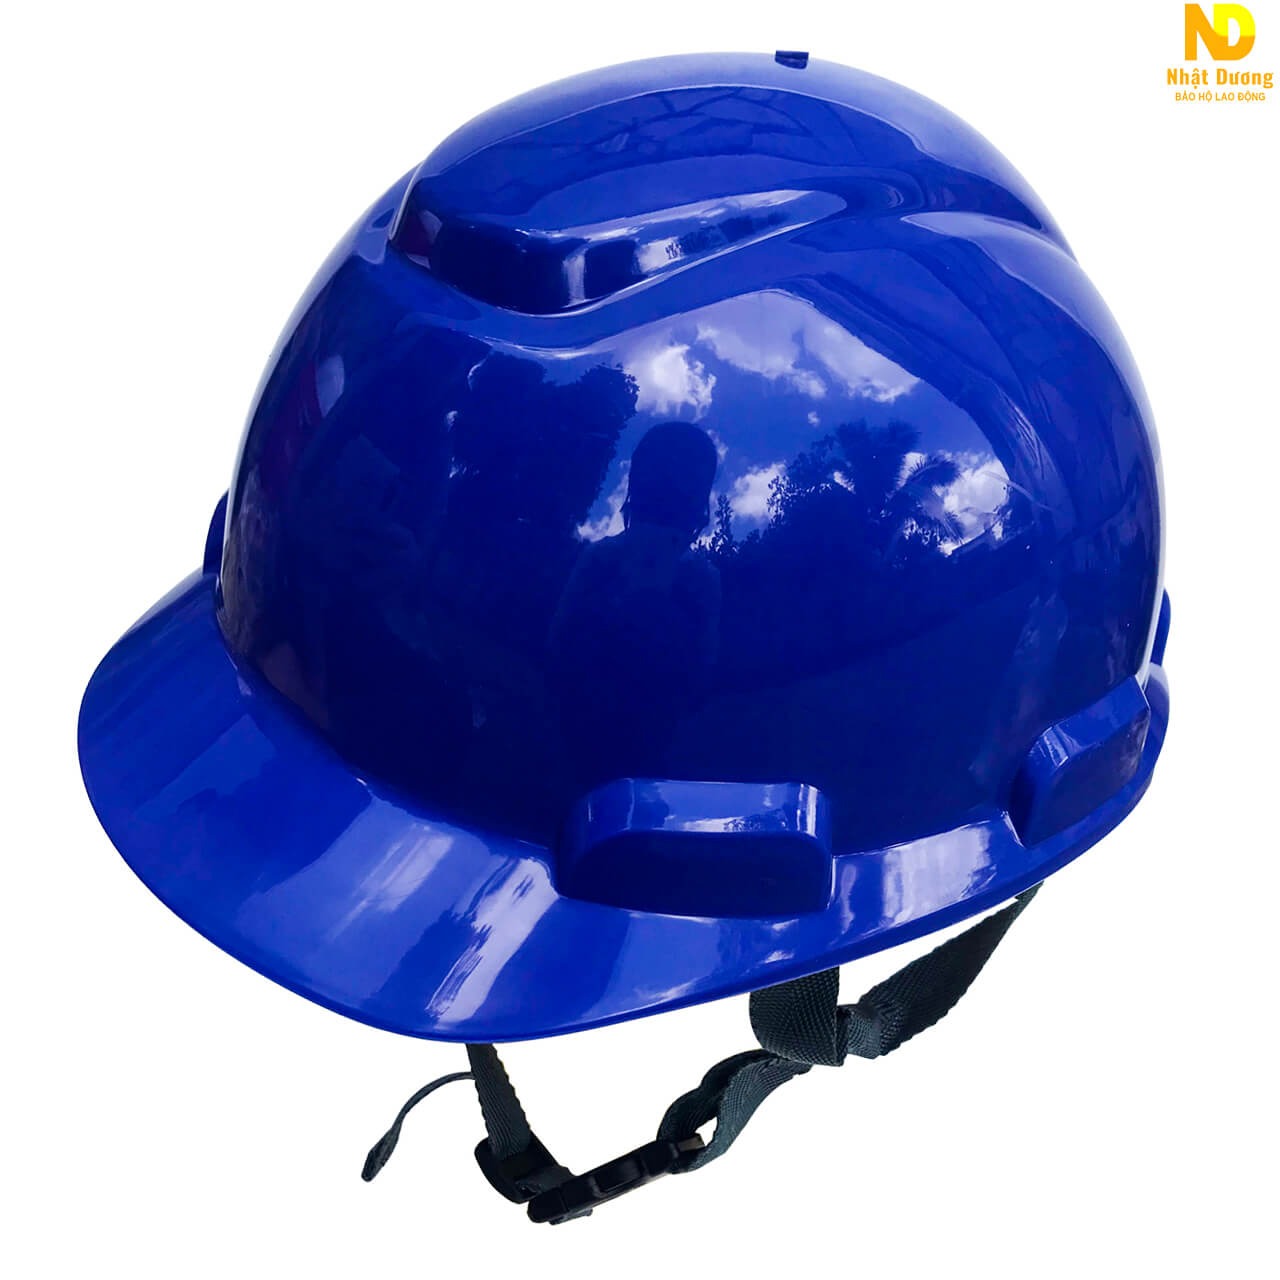 Mũ bảo hộ công trình HP-N.08 màu xanh dương